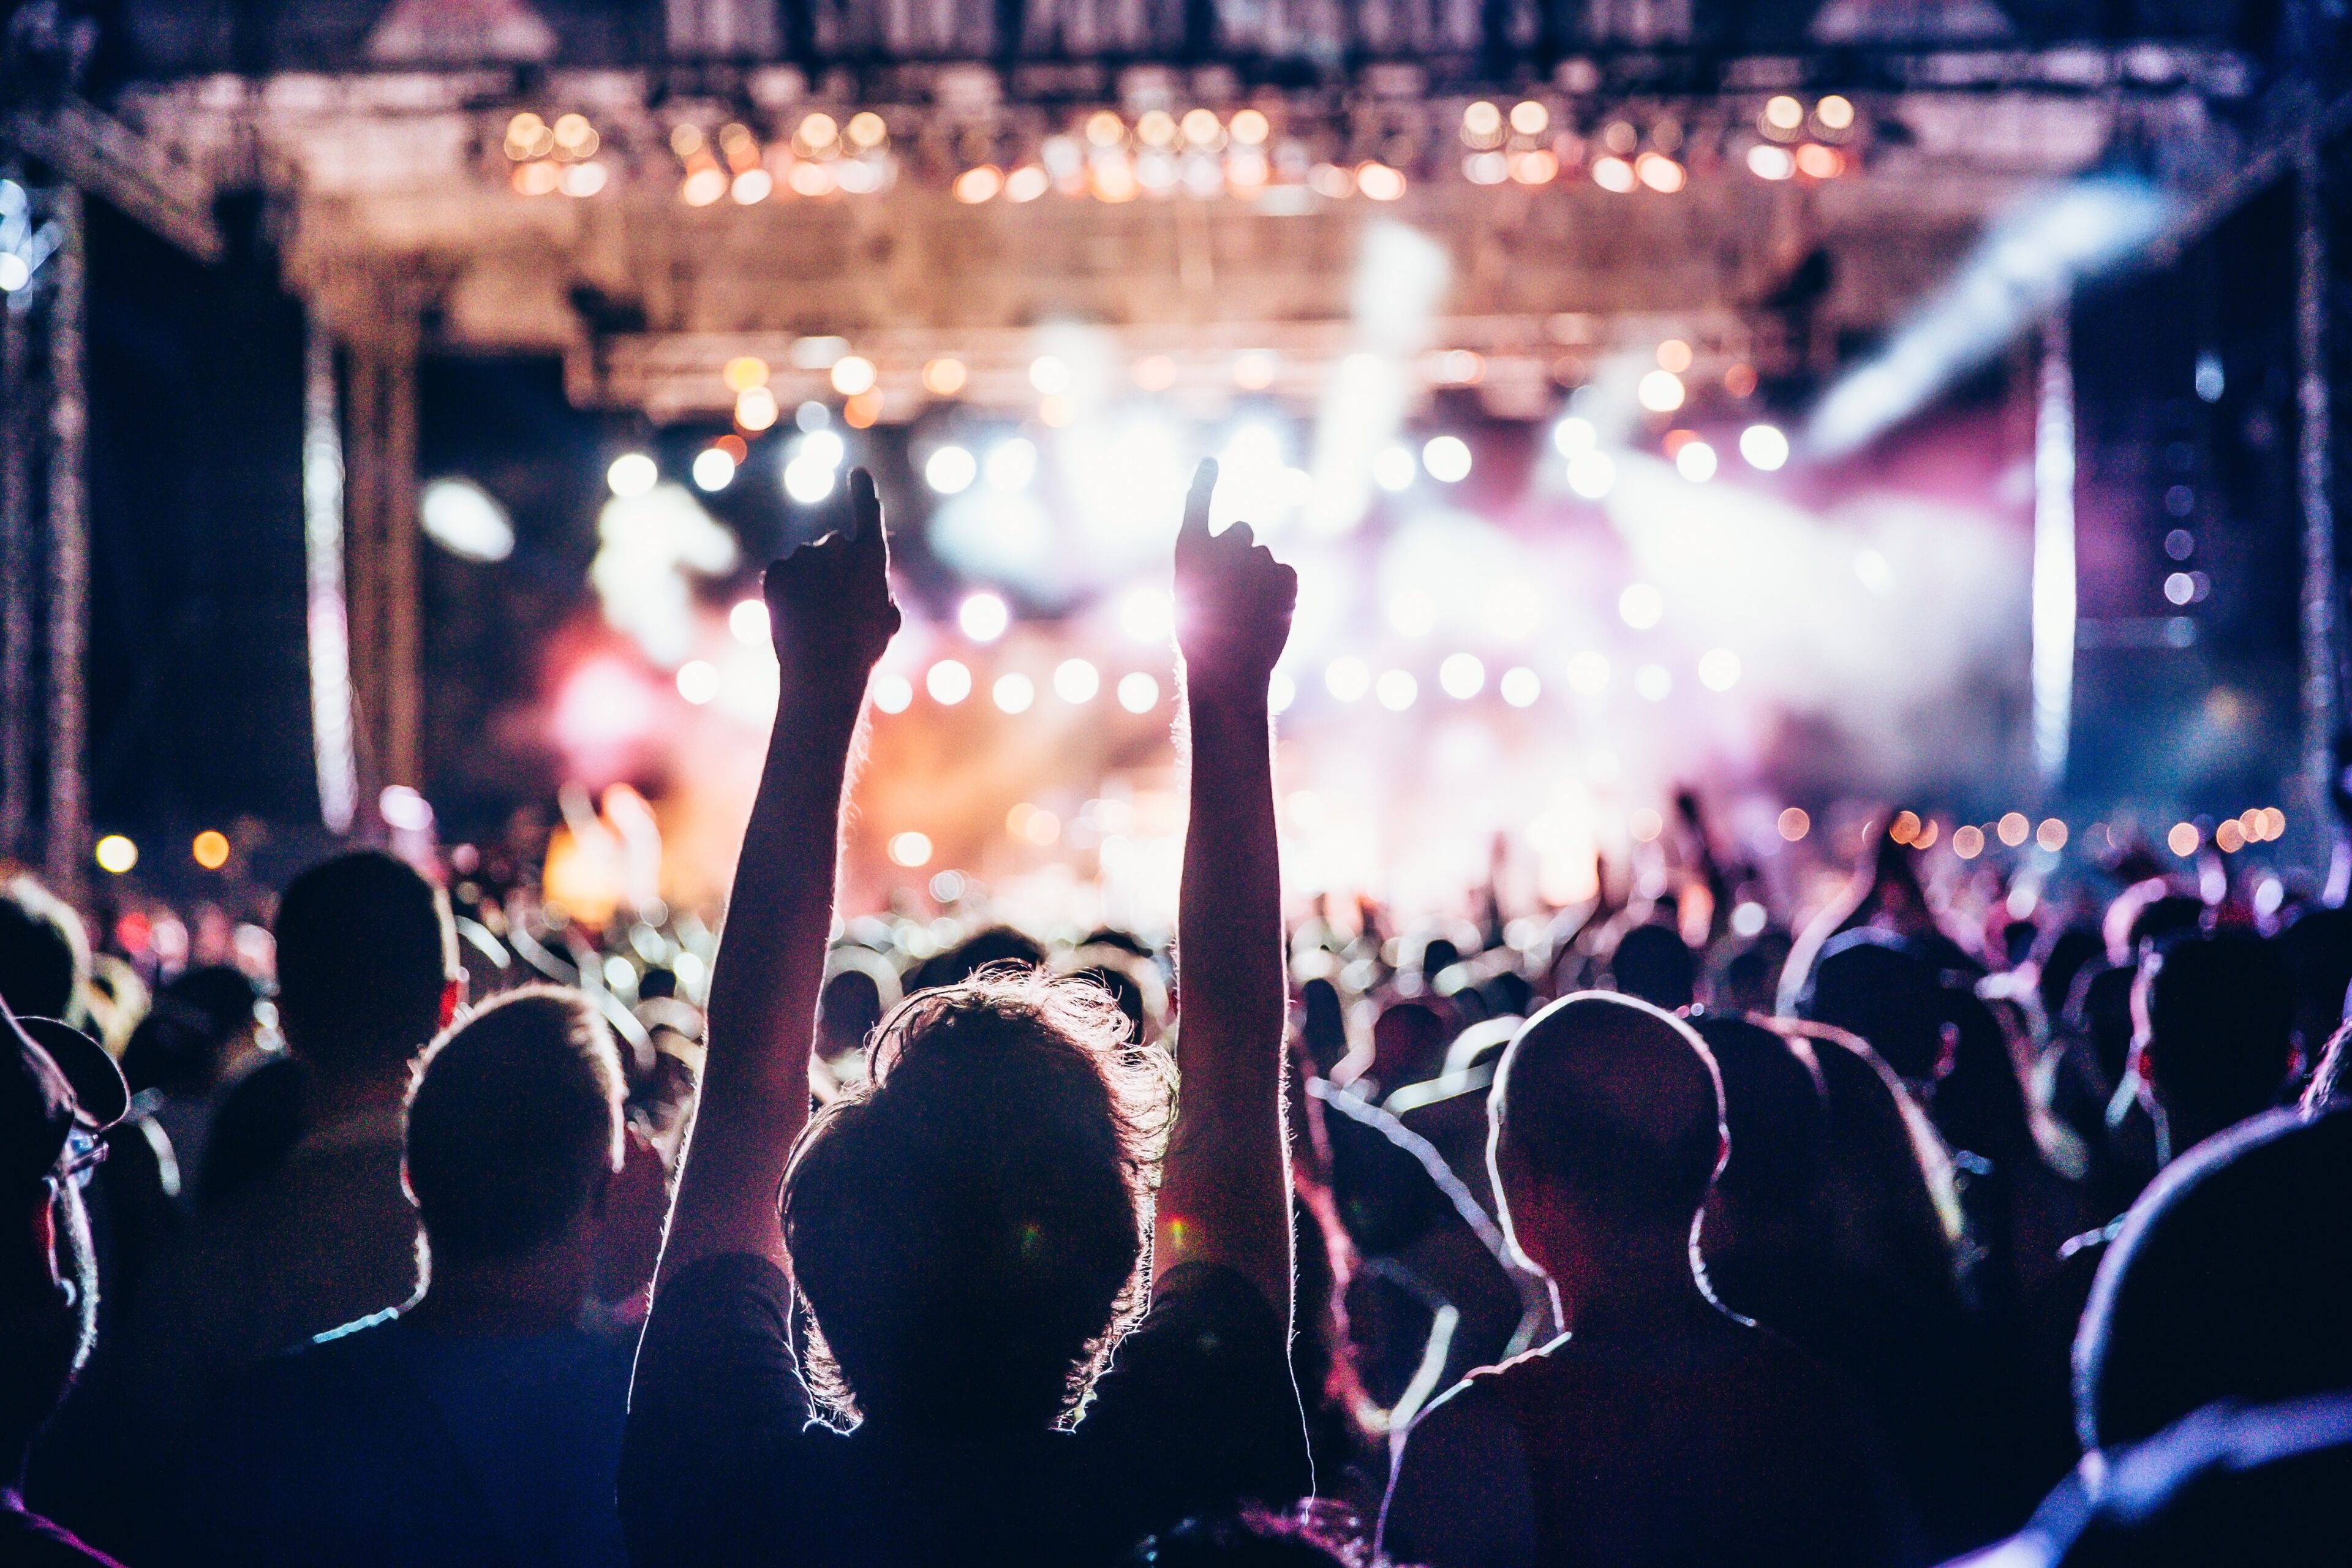 Asistentes al concierto en silueta levantan las manos contra las vibrantes luces del escenario en un festival de música al aire libre de noche.